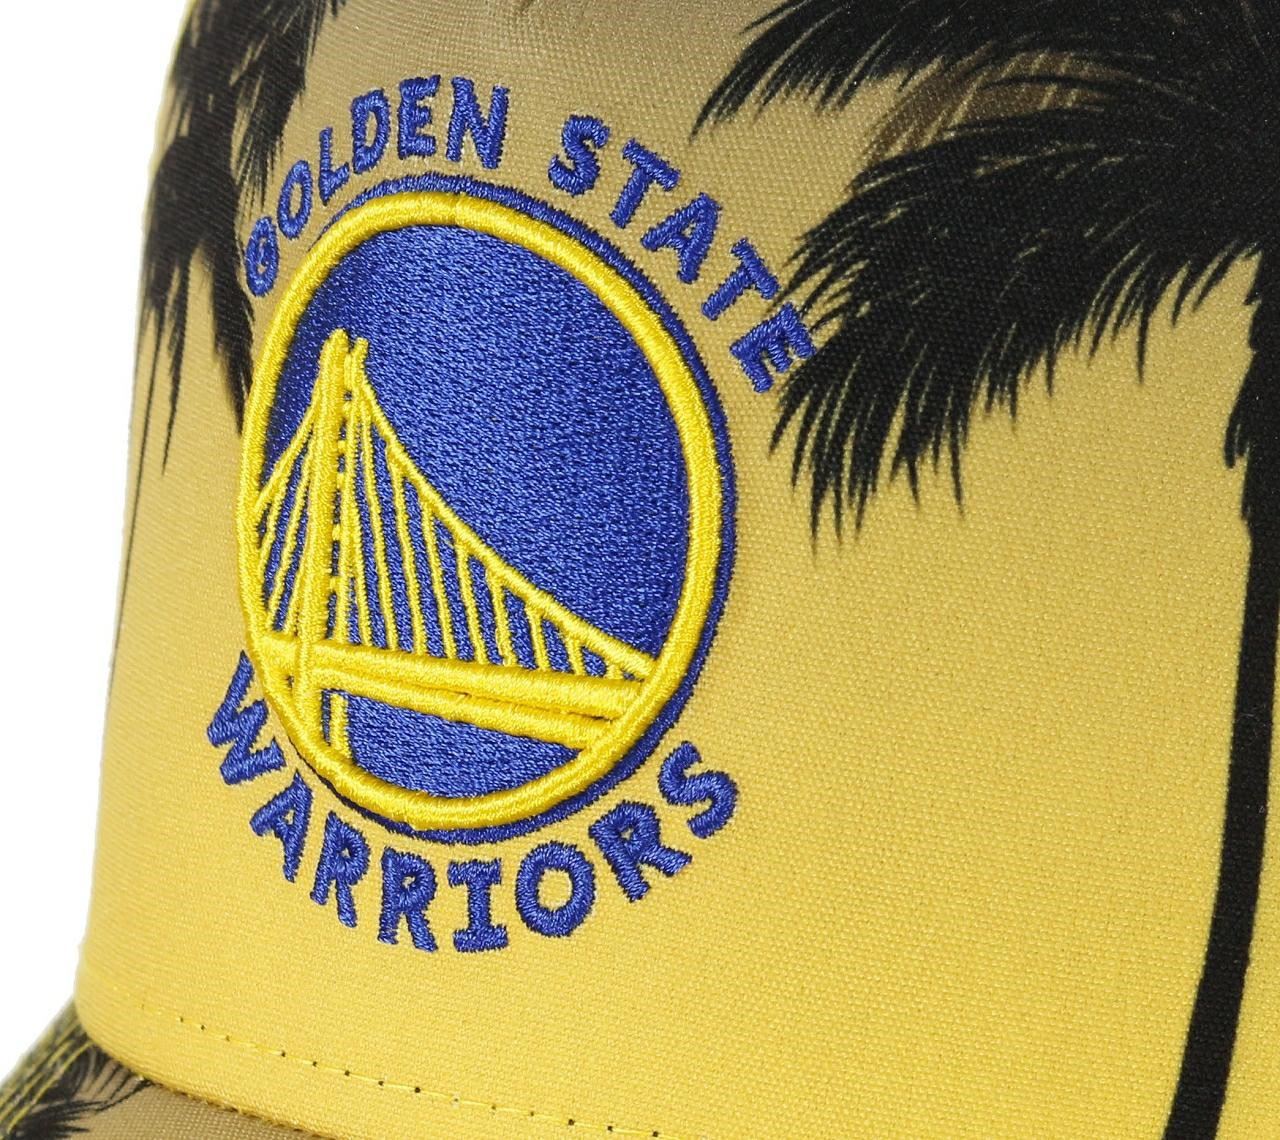 Golden State Warriors NBA Palm Tree A-Frame Trucker Cap New Era